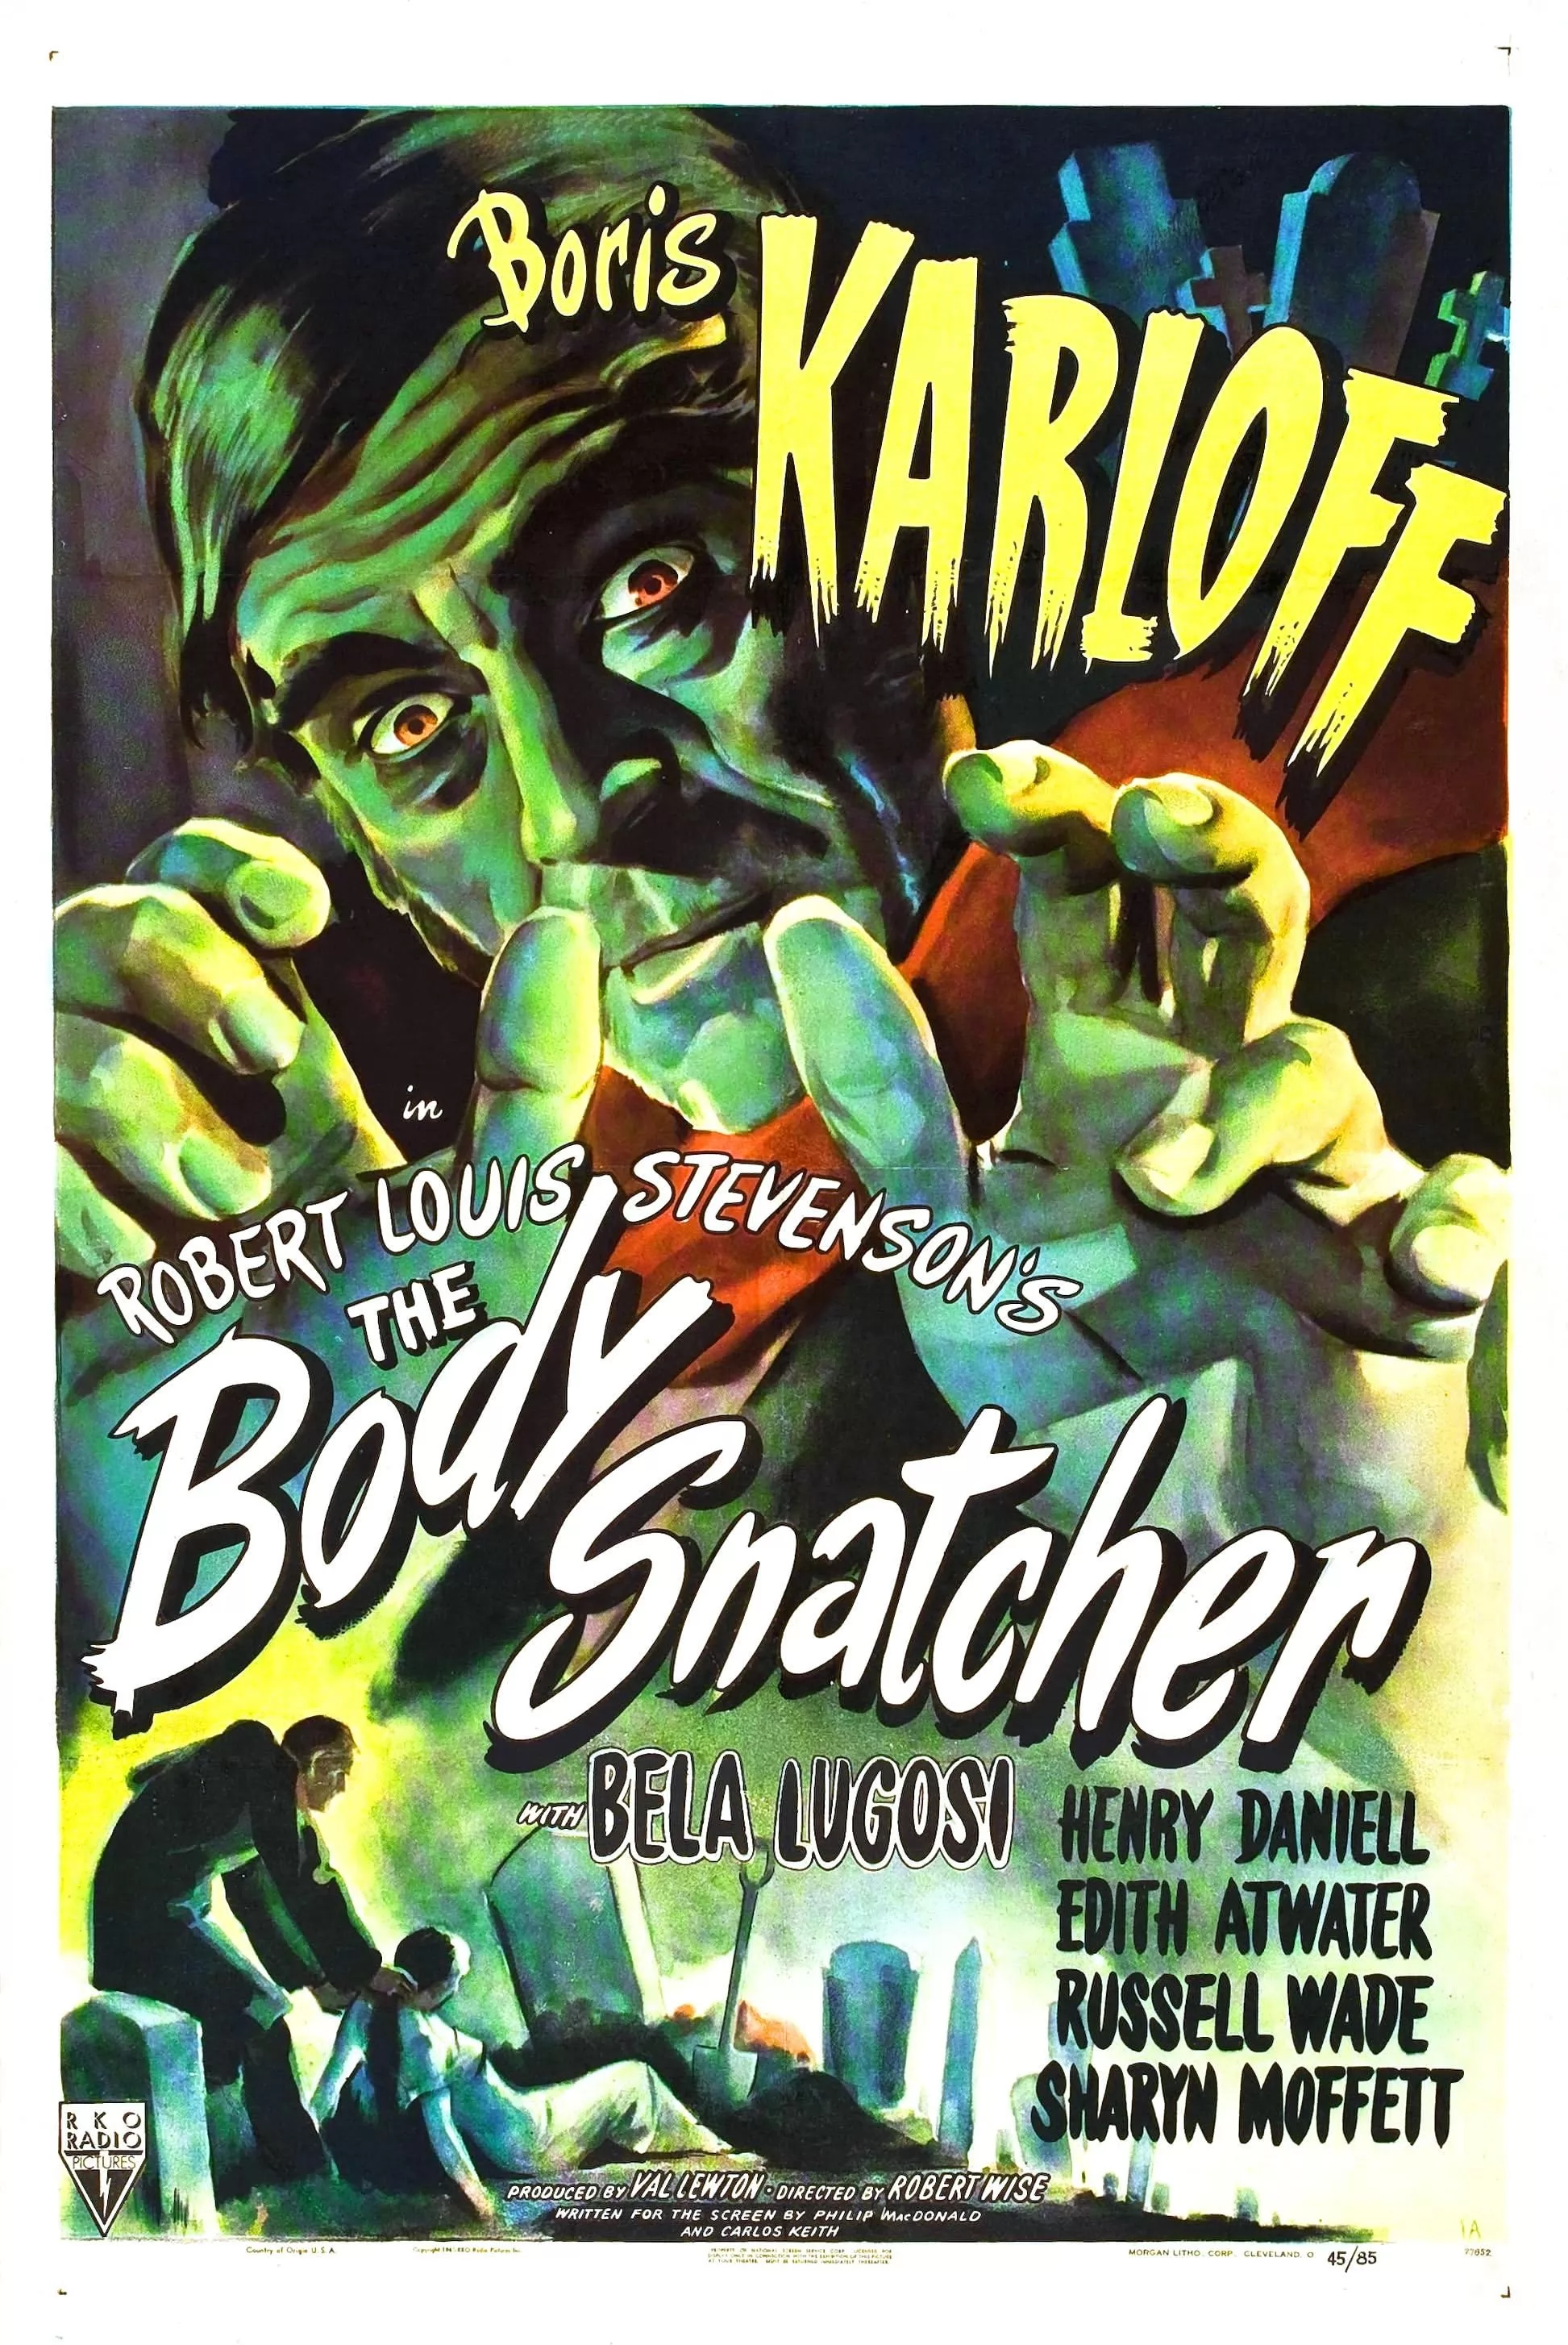 Похитители тел / The Body Snatcher (1945) отзывы. Рецензии. Новости кино. Актеры фильма Похитители тел. Отзывы о фильме Похитители тел